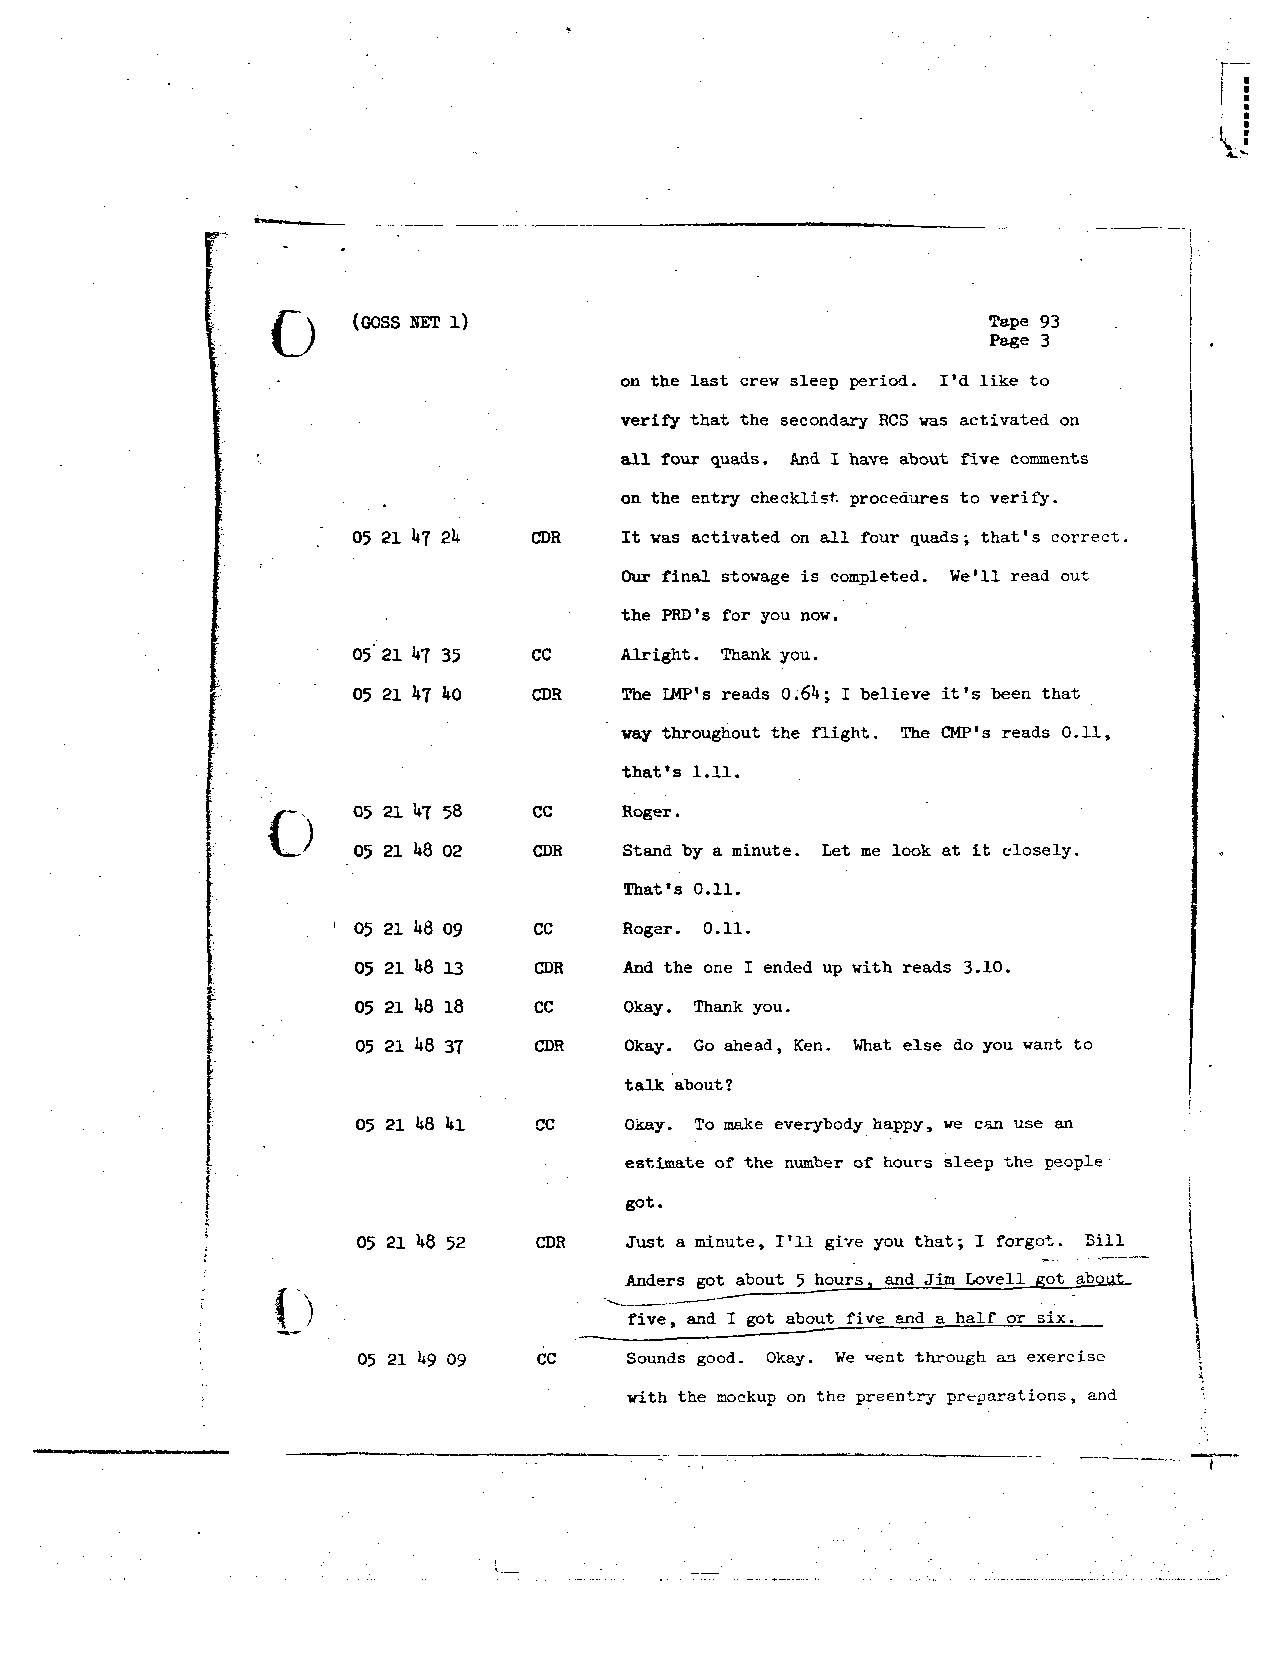 Page 735 of Apollo 8’s original transcript